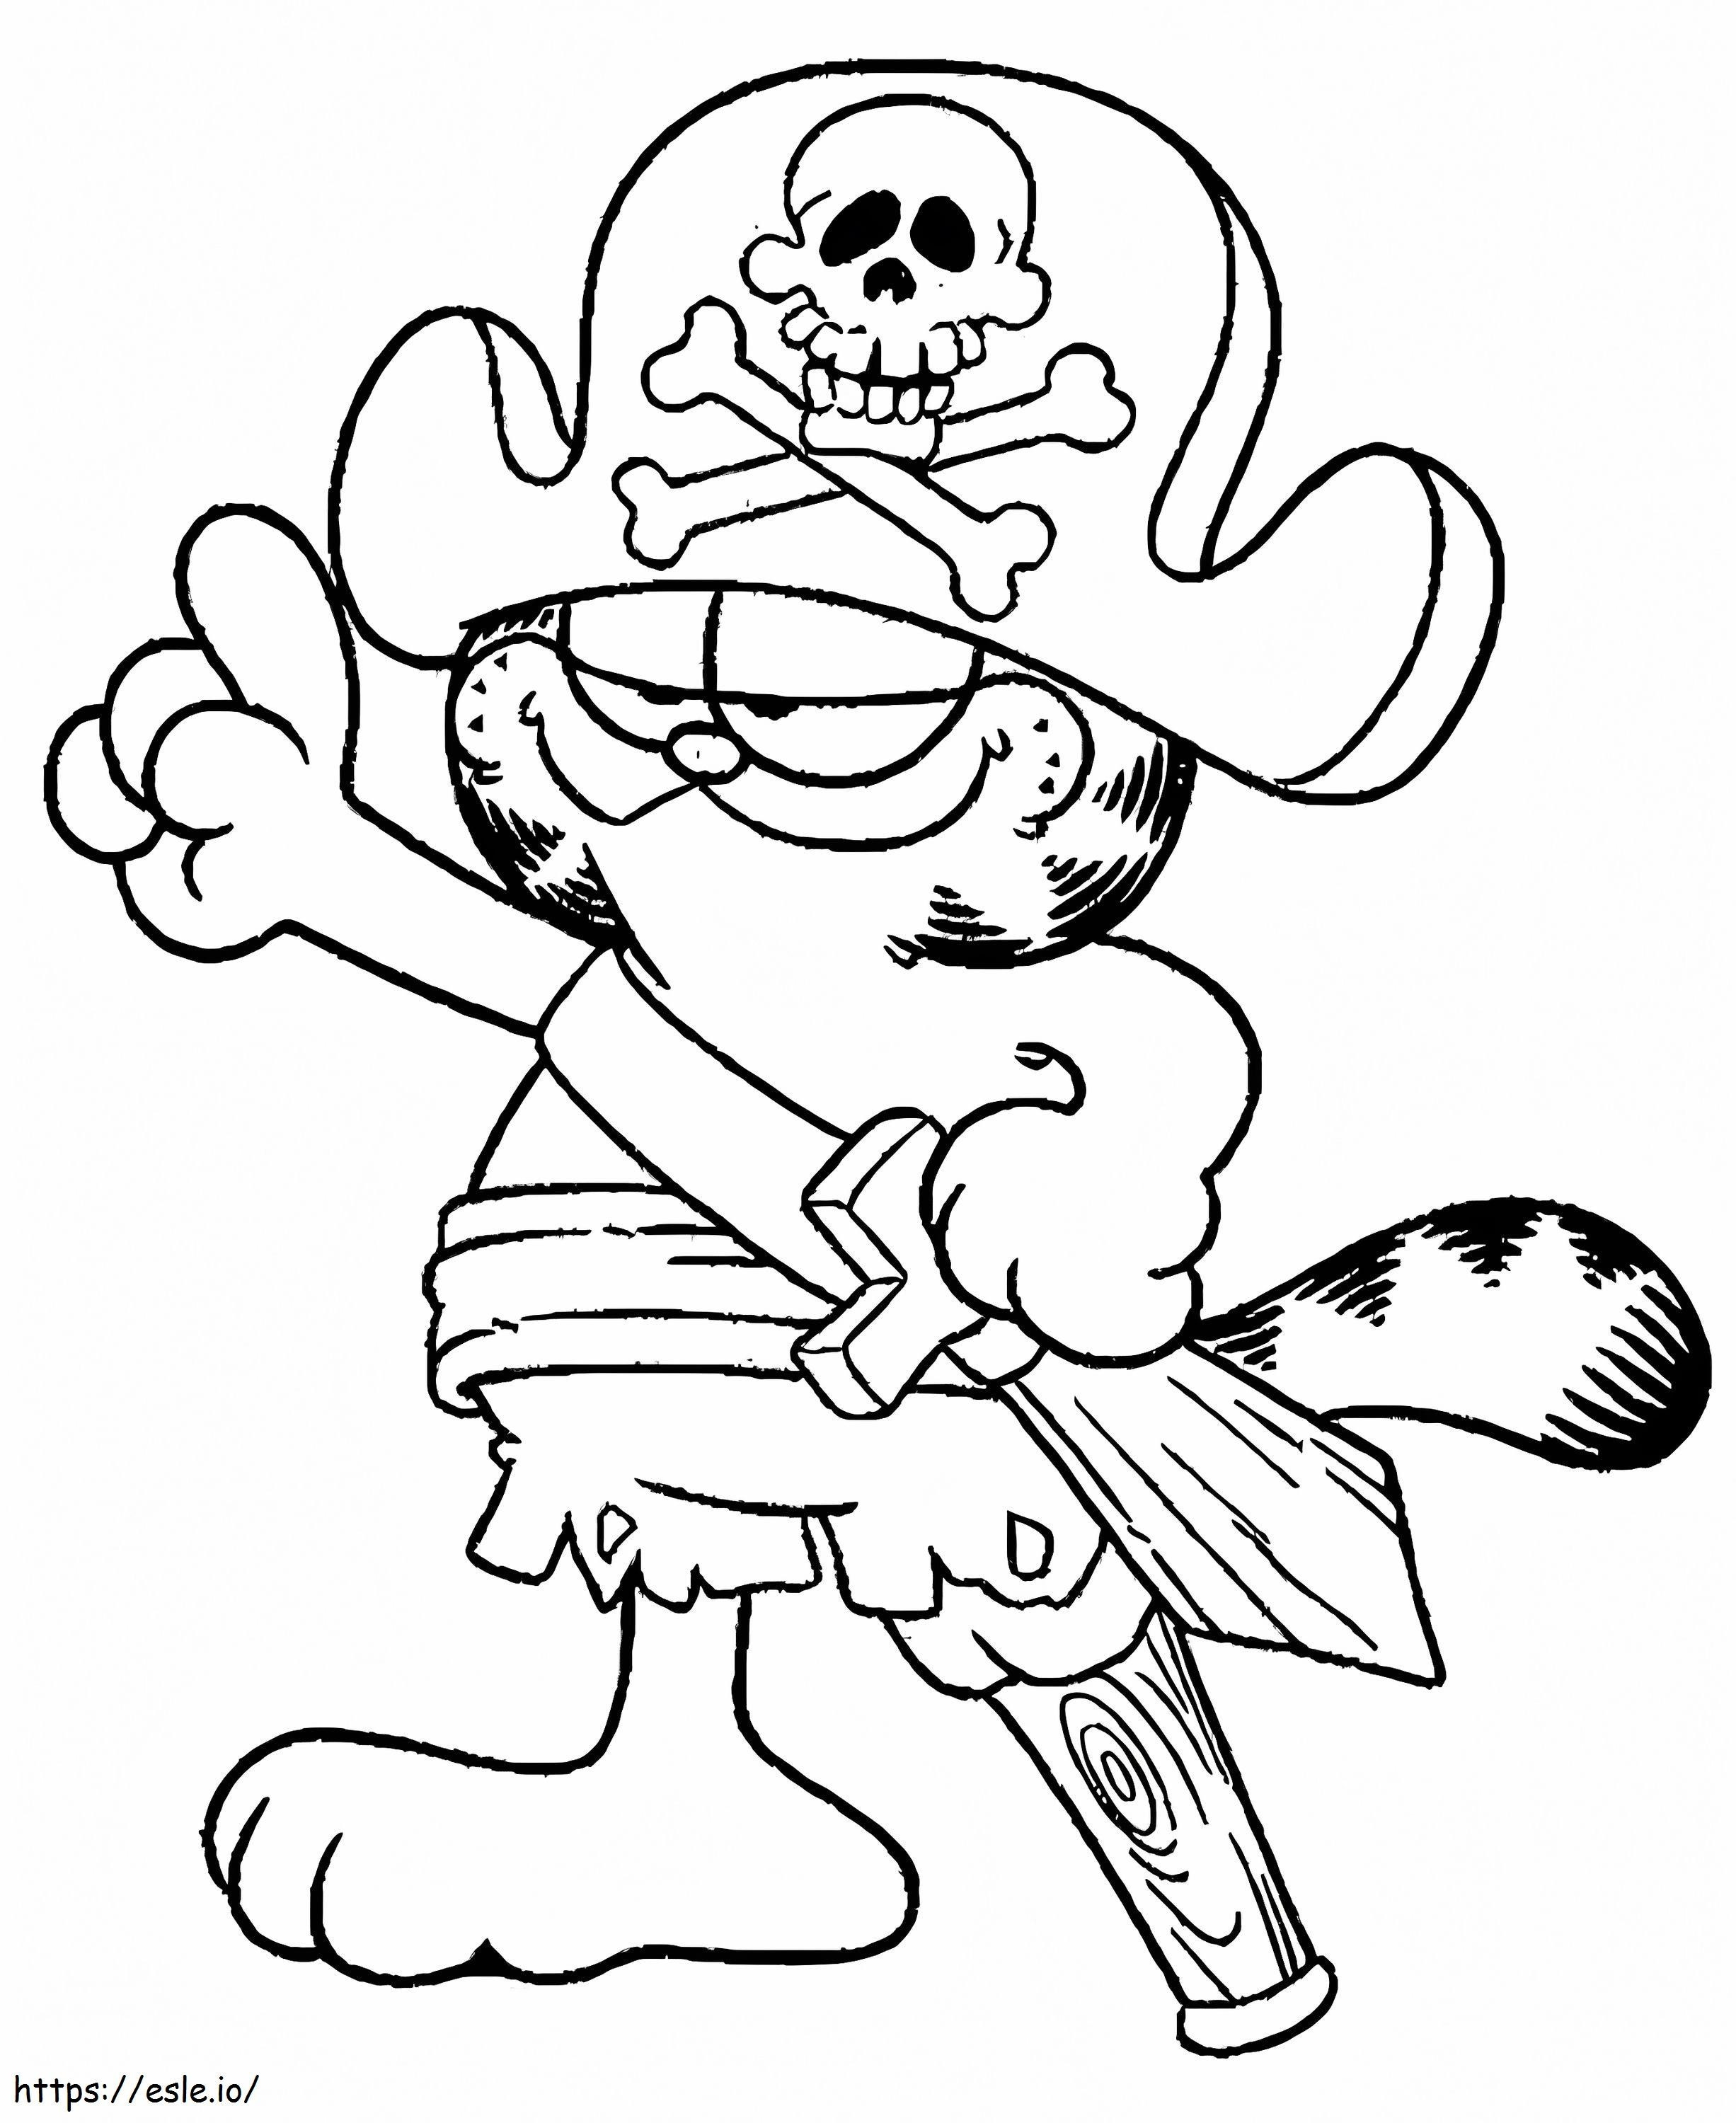 Garfield-Piraten ausmalbilder